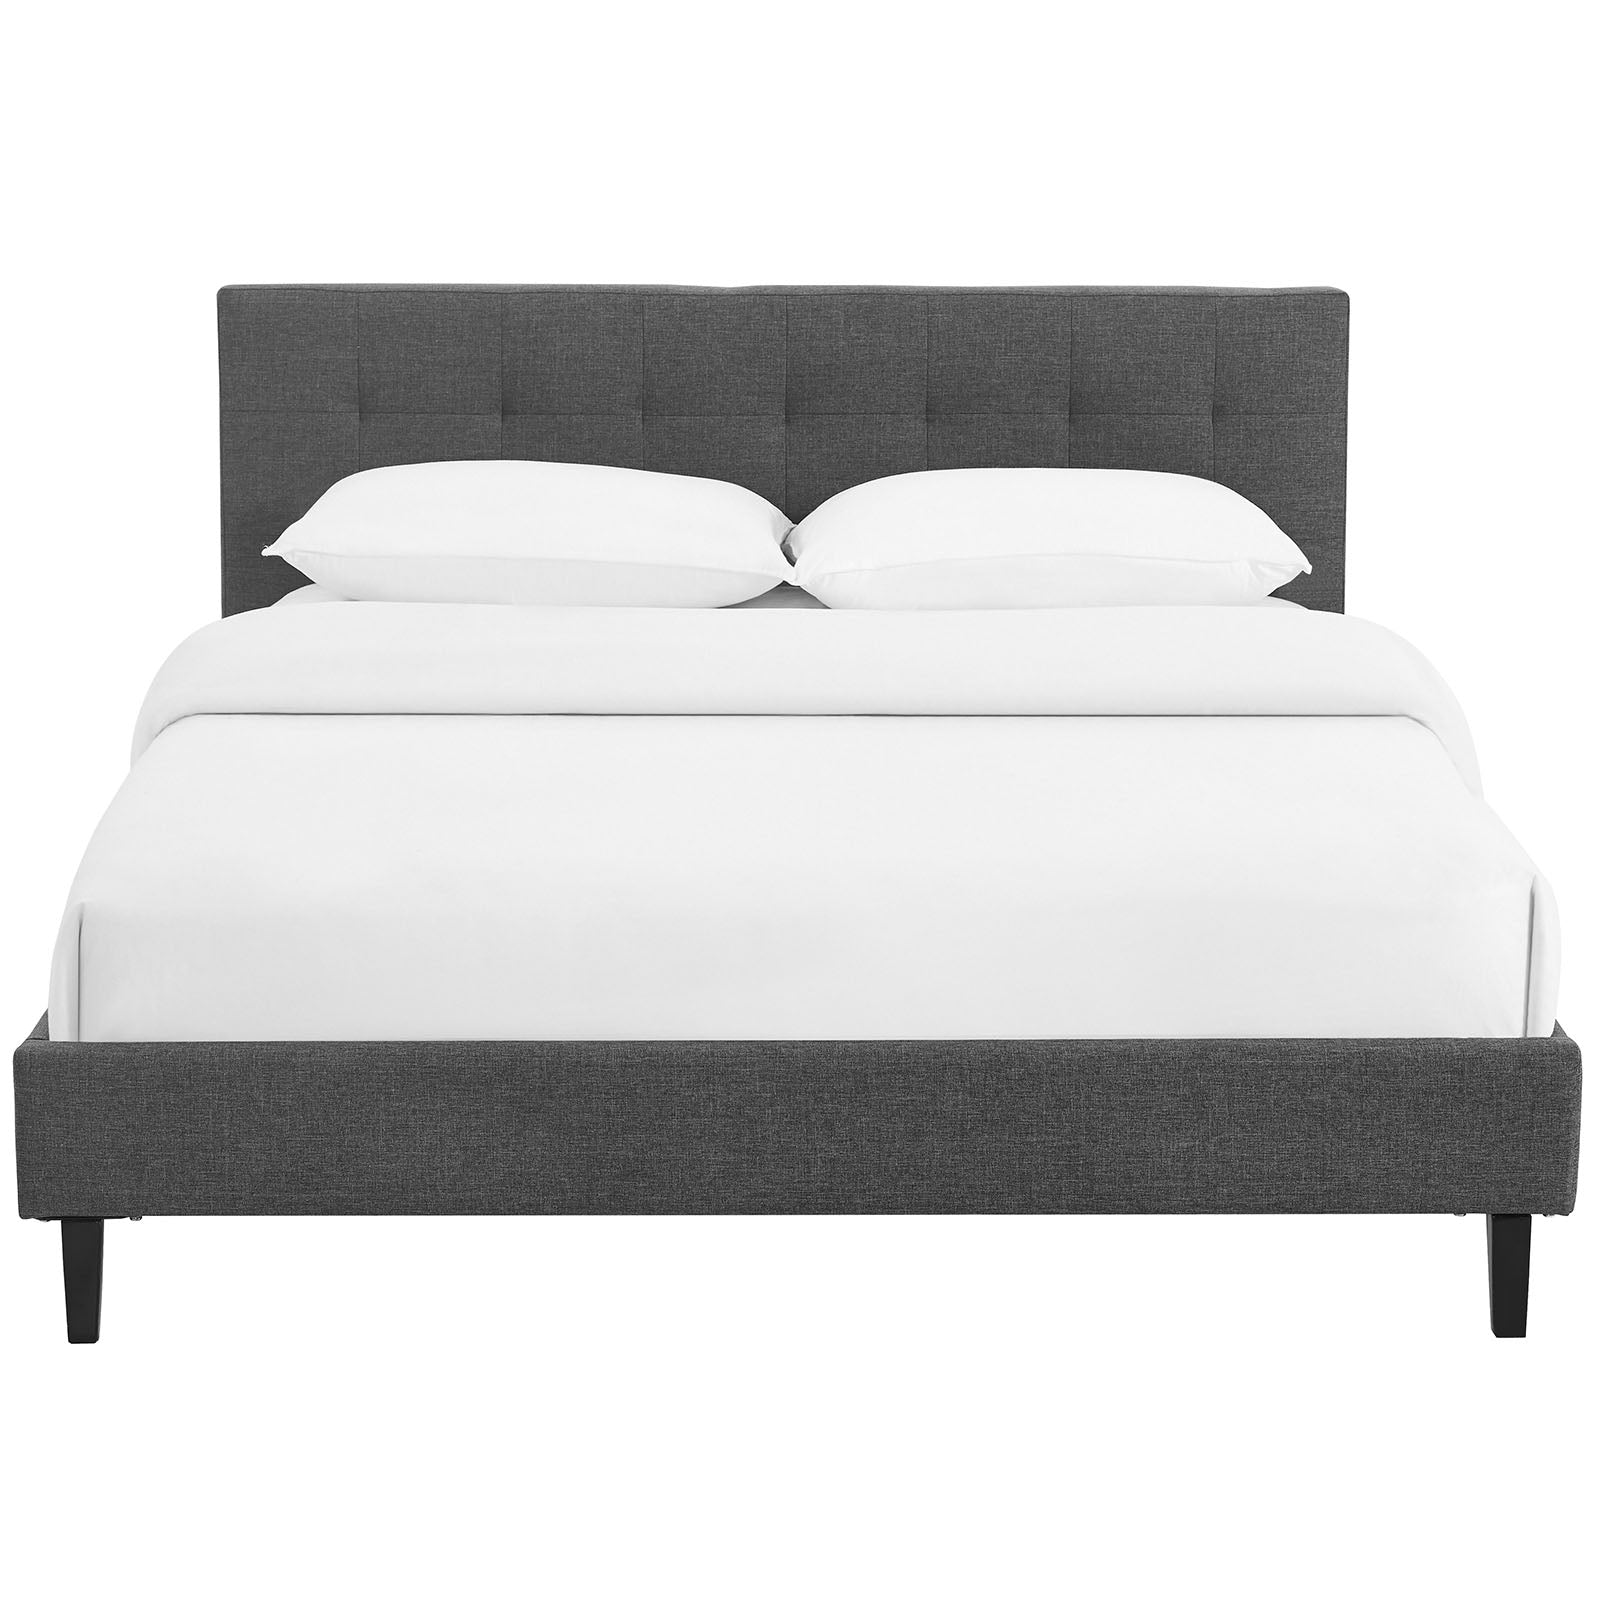 Modway Beds - Linnea Queen Bed Gray